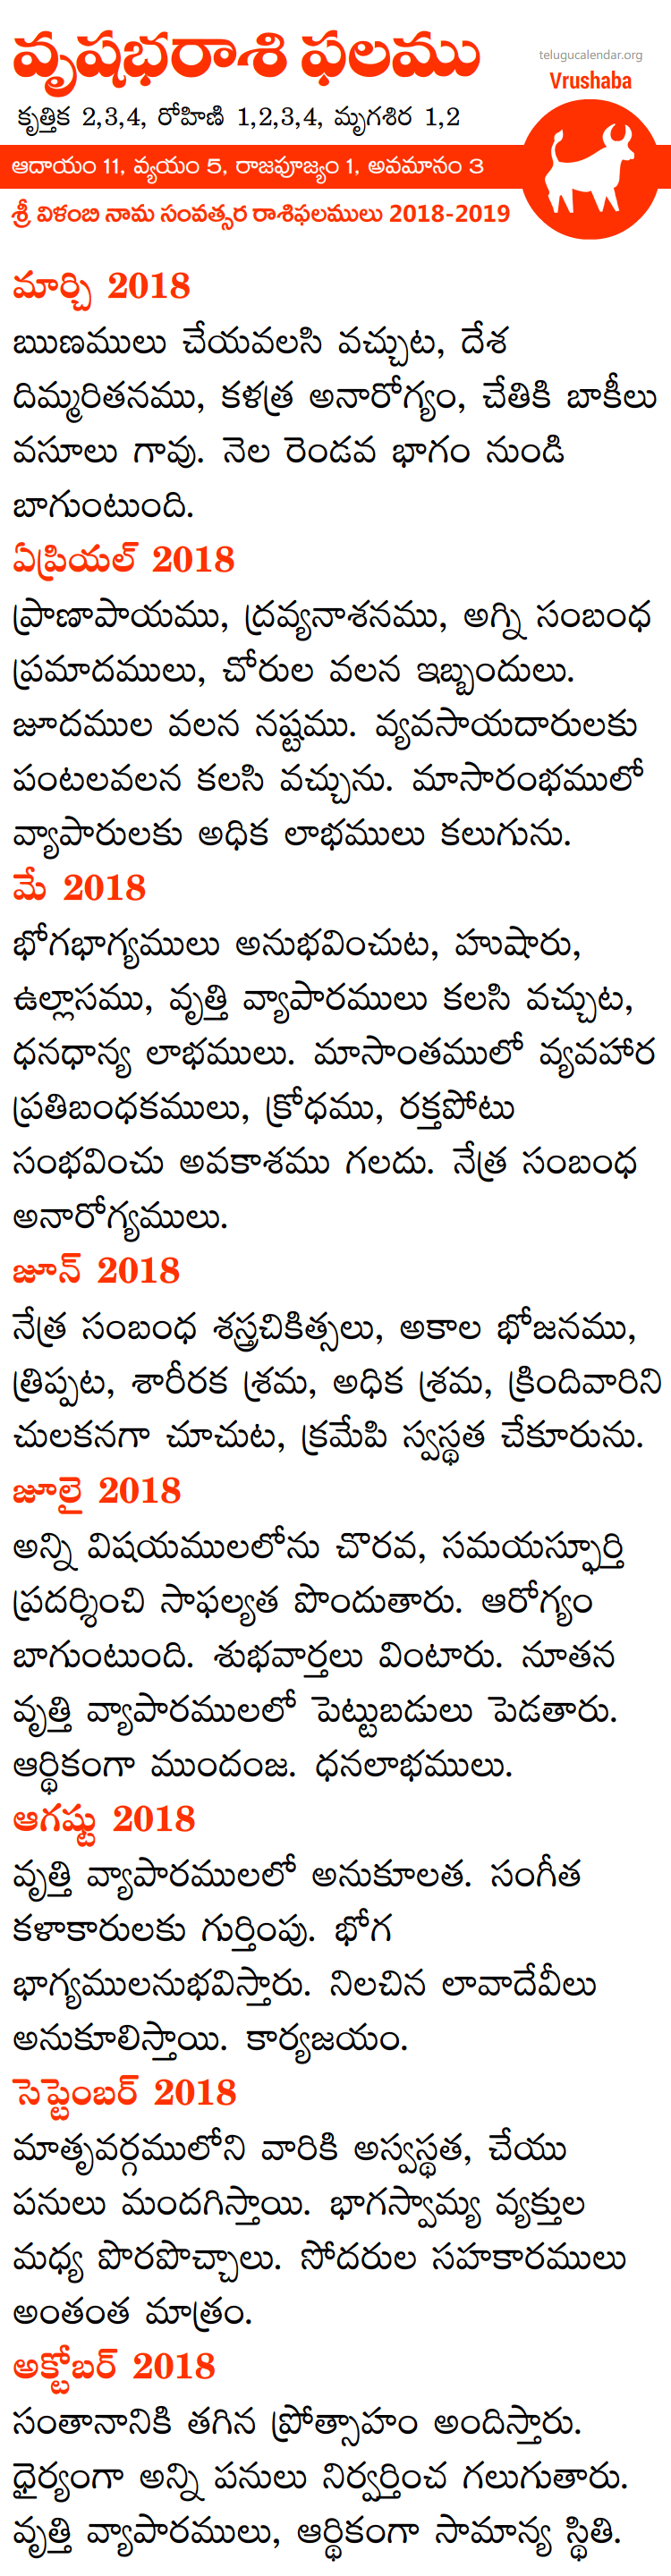 Vrushaba Rasi Phalalu 2018-2019 Telugu